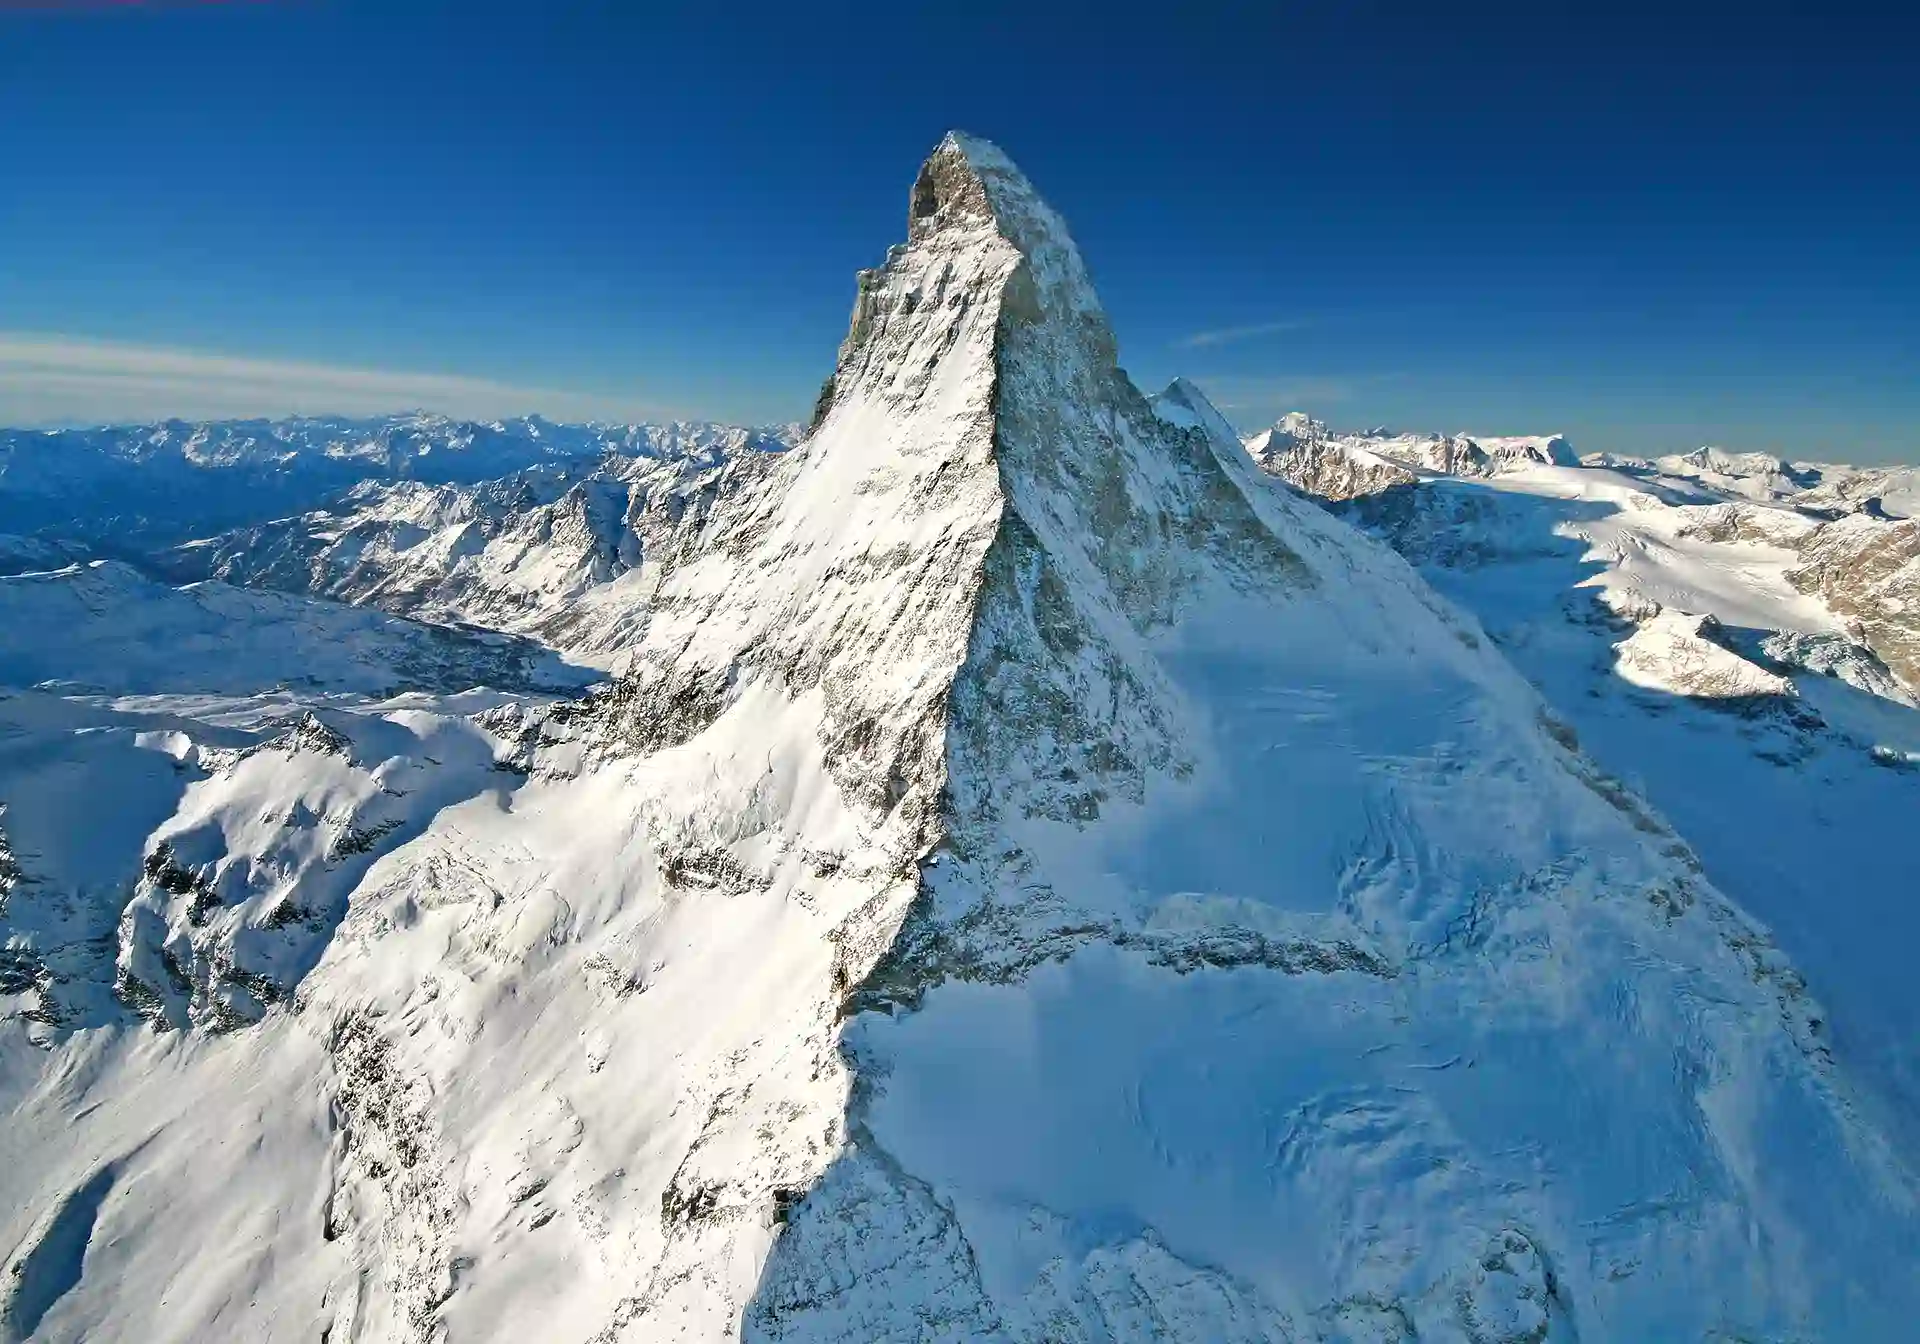 Day 4 - Zermatt - the majestic Matterhorn 